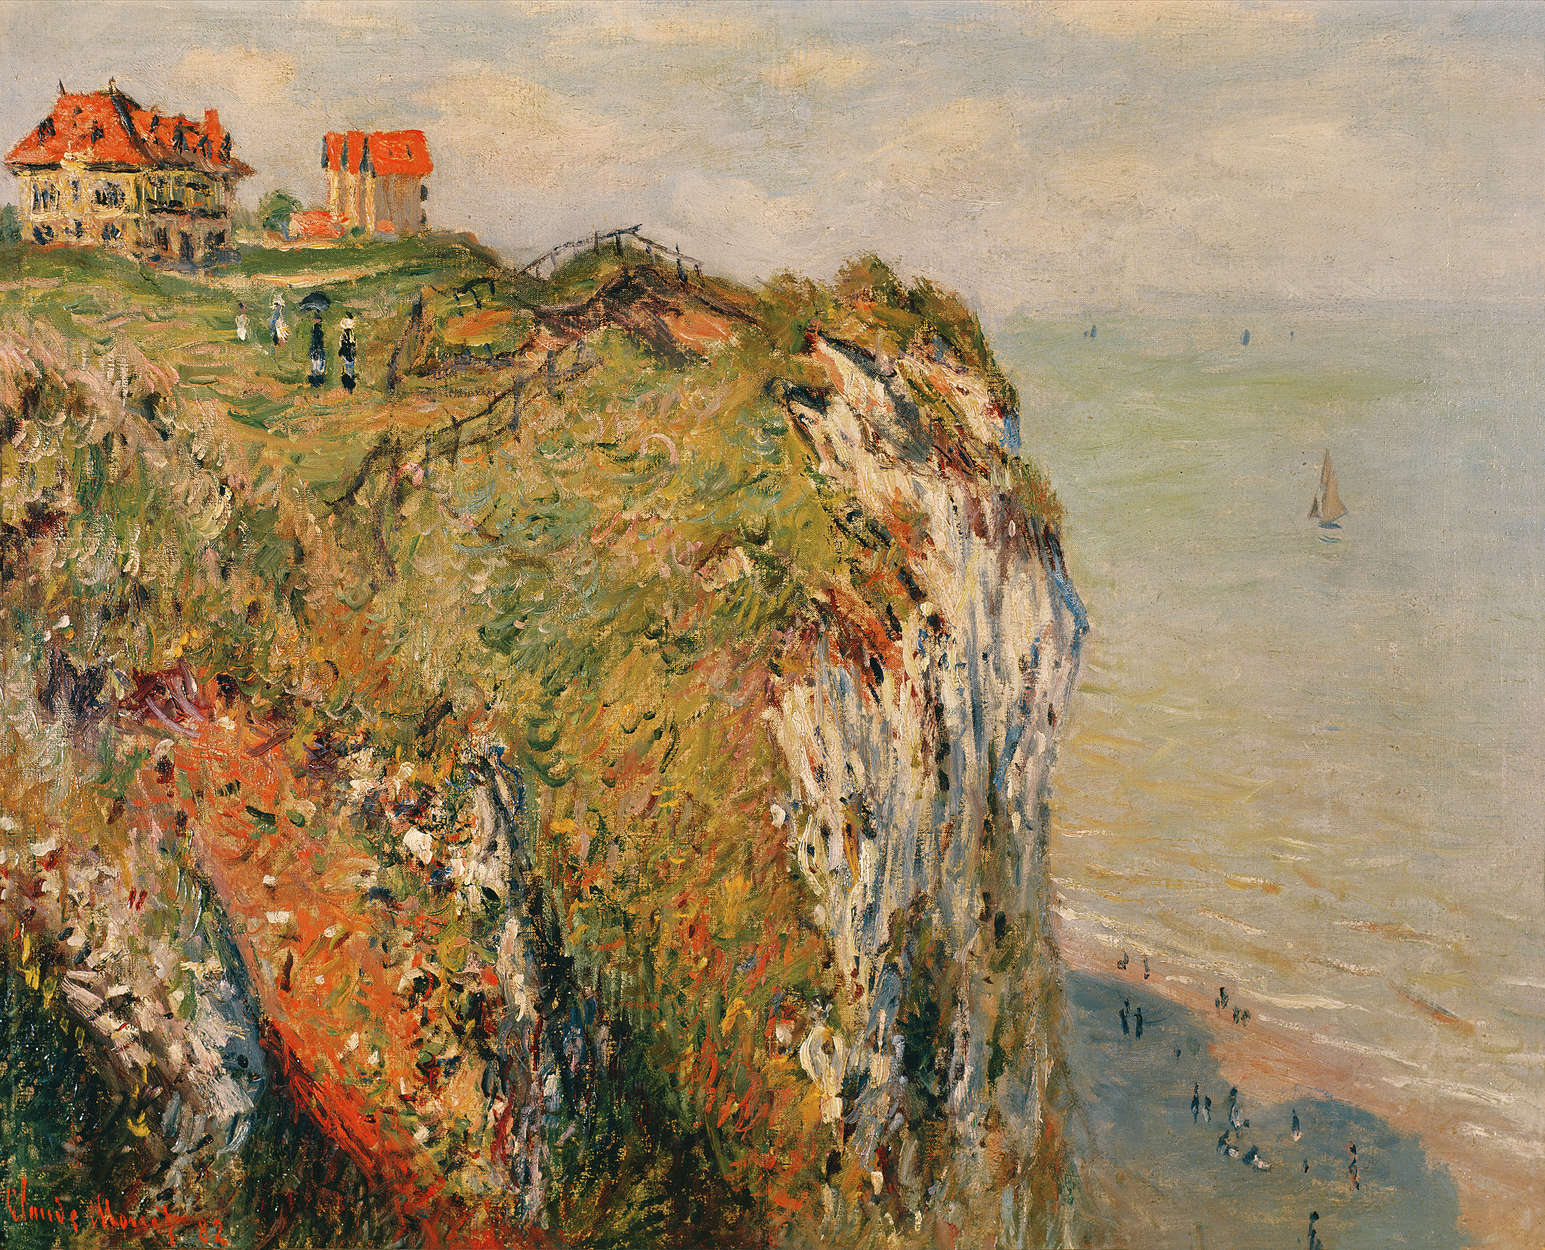             Fototapete "Klippe bei Dieppe" von Claude Monet
        